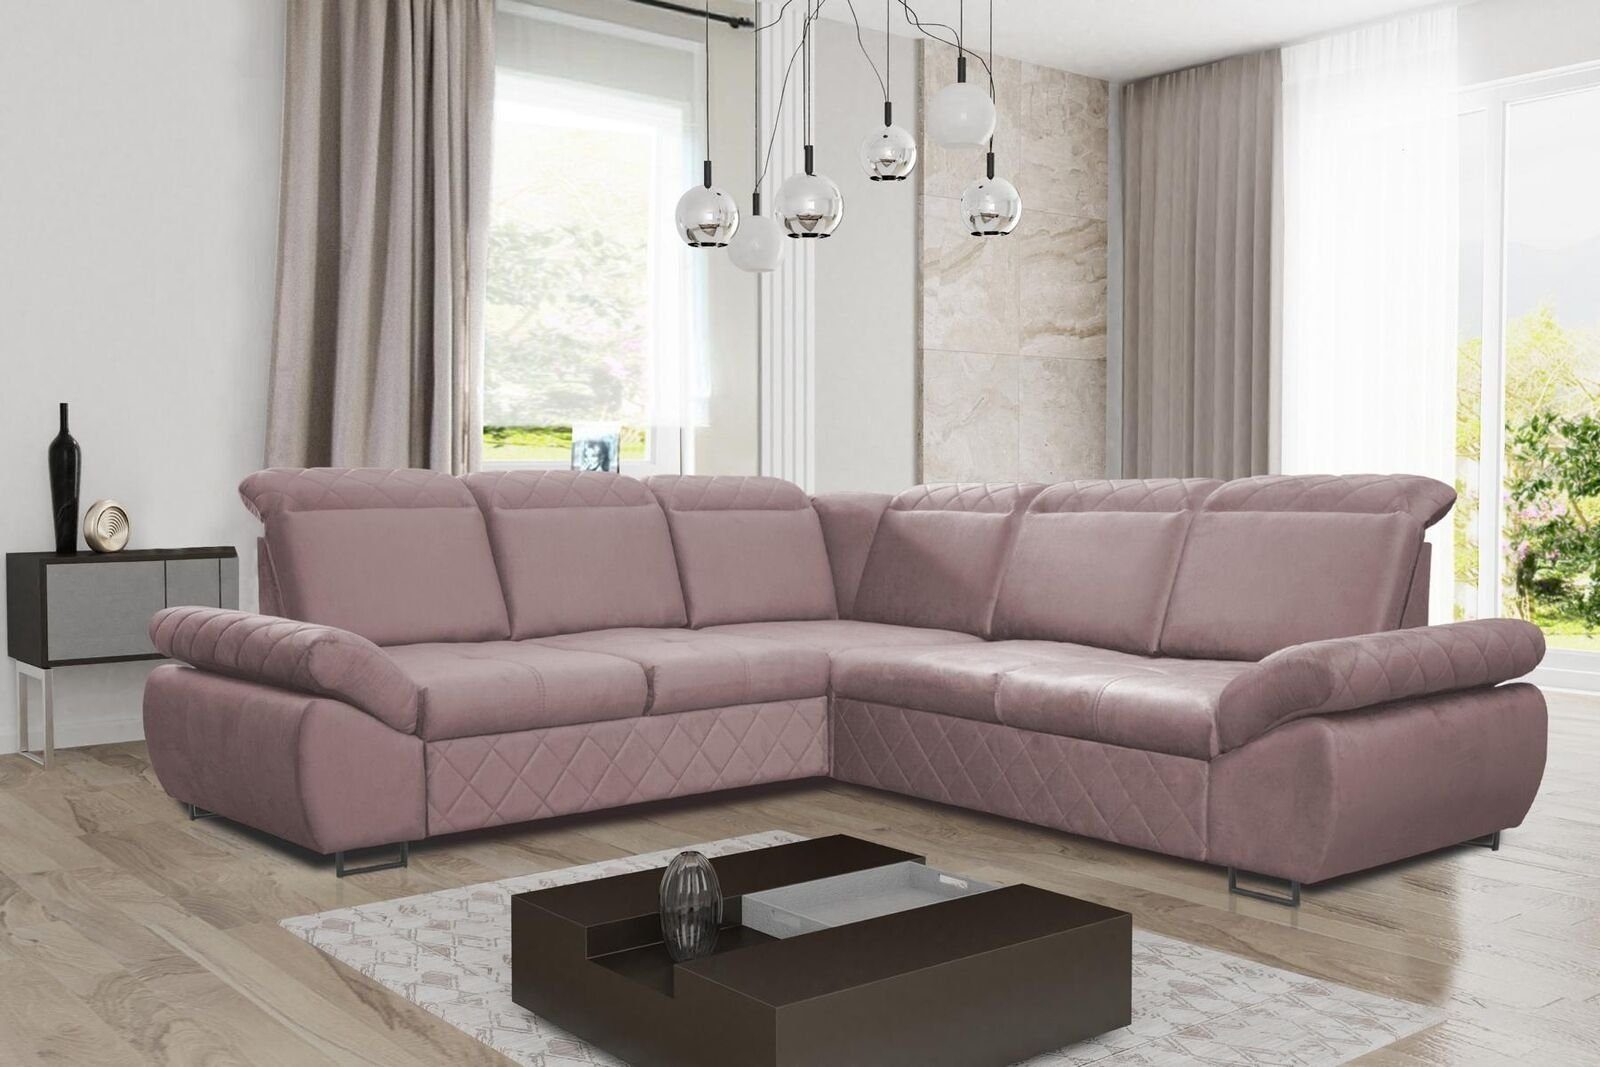 JVmoebel Ecksofa Moderne Design Sofas Couchs Möbel Textil LForm Neu Wohnzimmer Ecksofa, Mit Bettfunktion Rosa